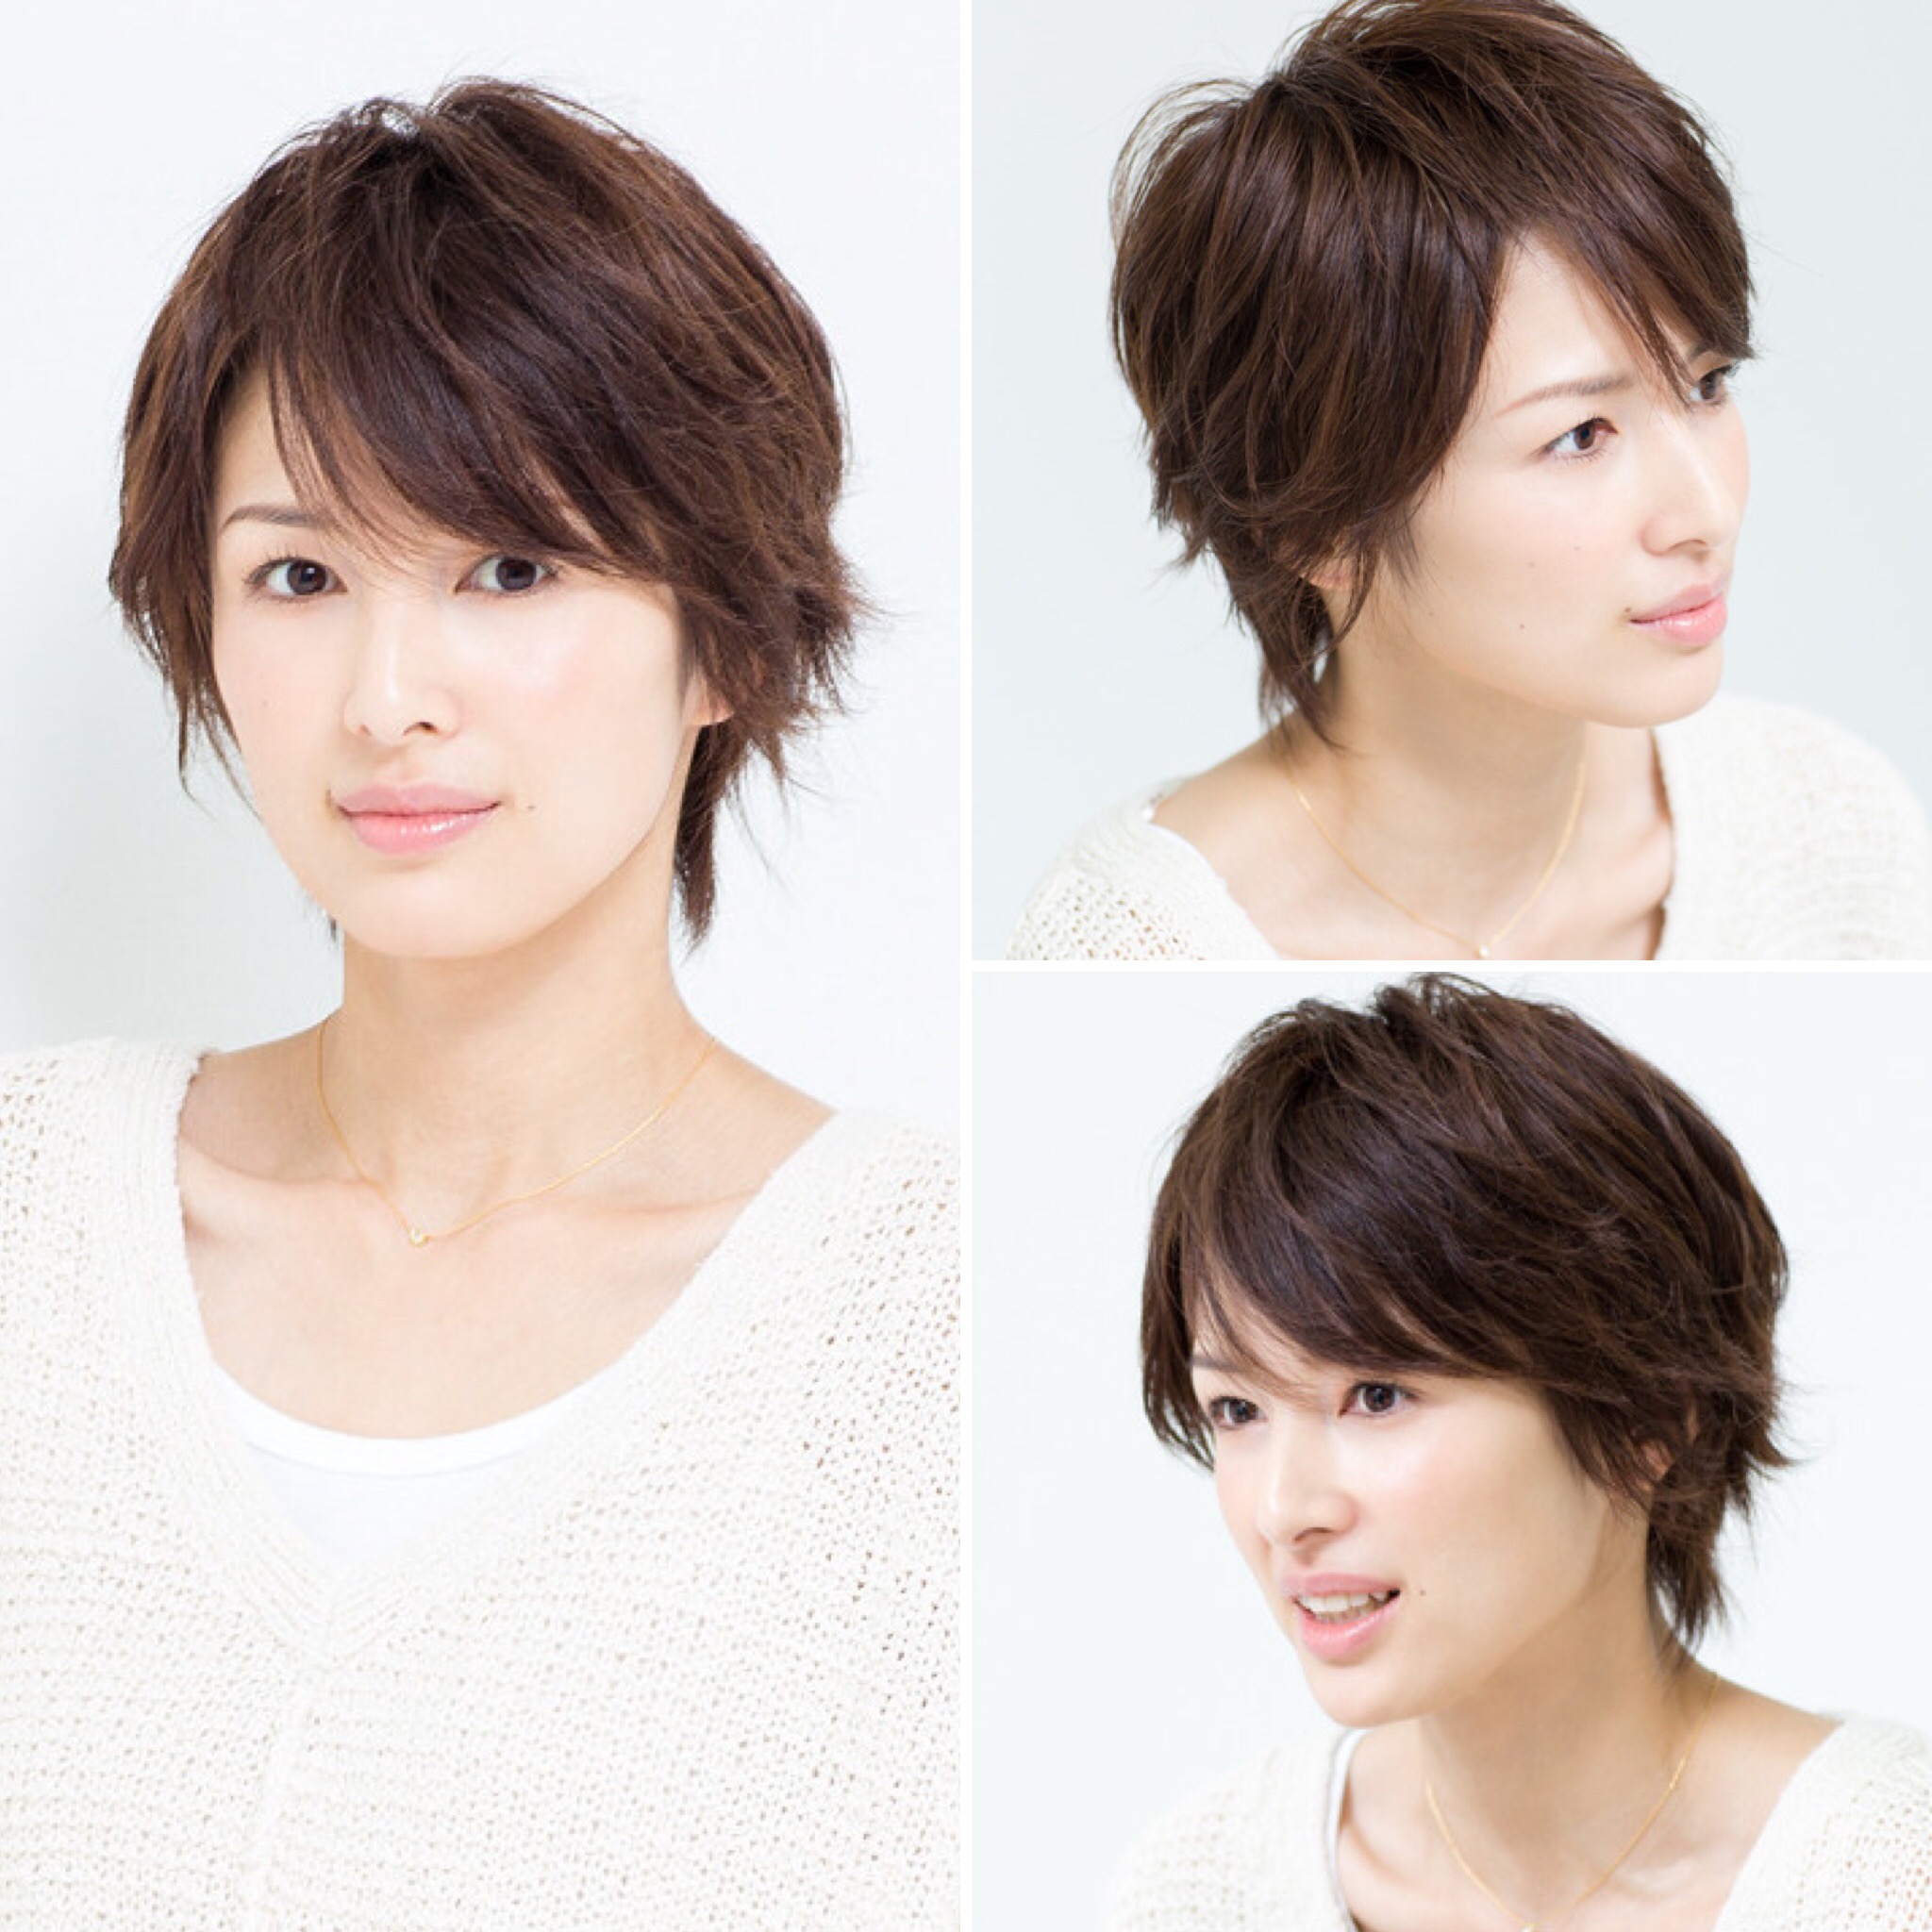 上吉瀬 美智子 髪型 最高のヘアスタイルのアイデア